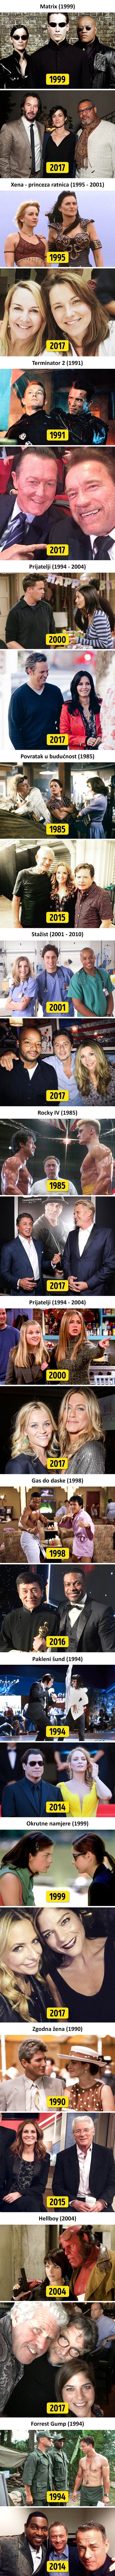 Glumci iz poznatih filmova i serija su se okupili nakon puno godina, pogledajte koliko su se promijenili